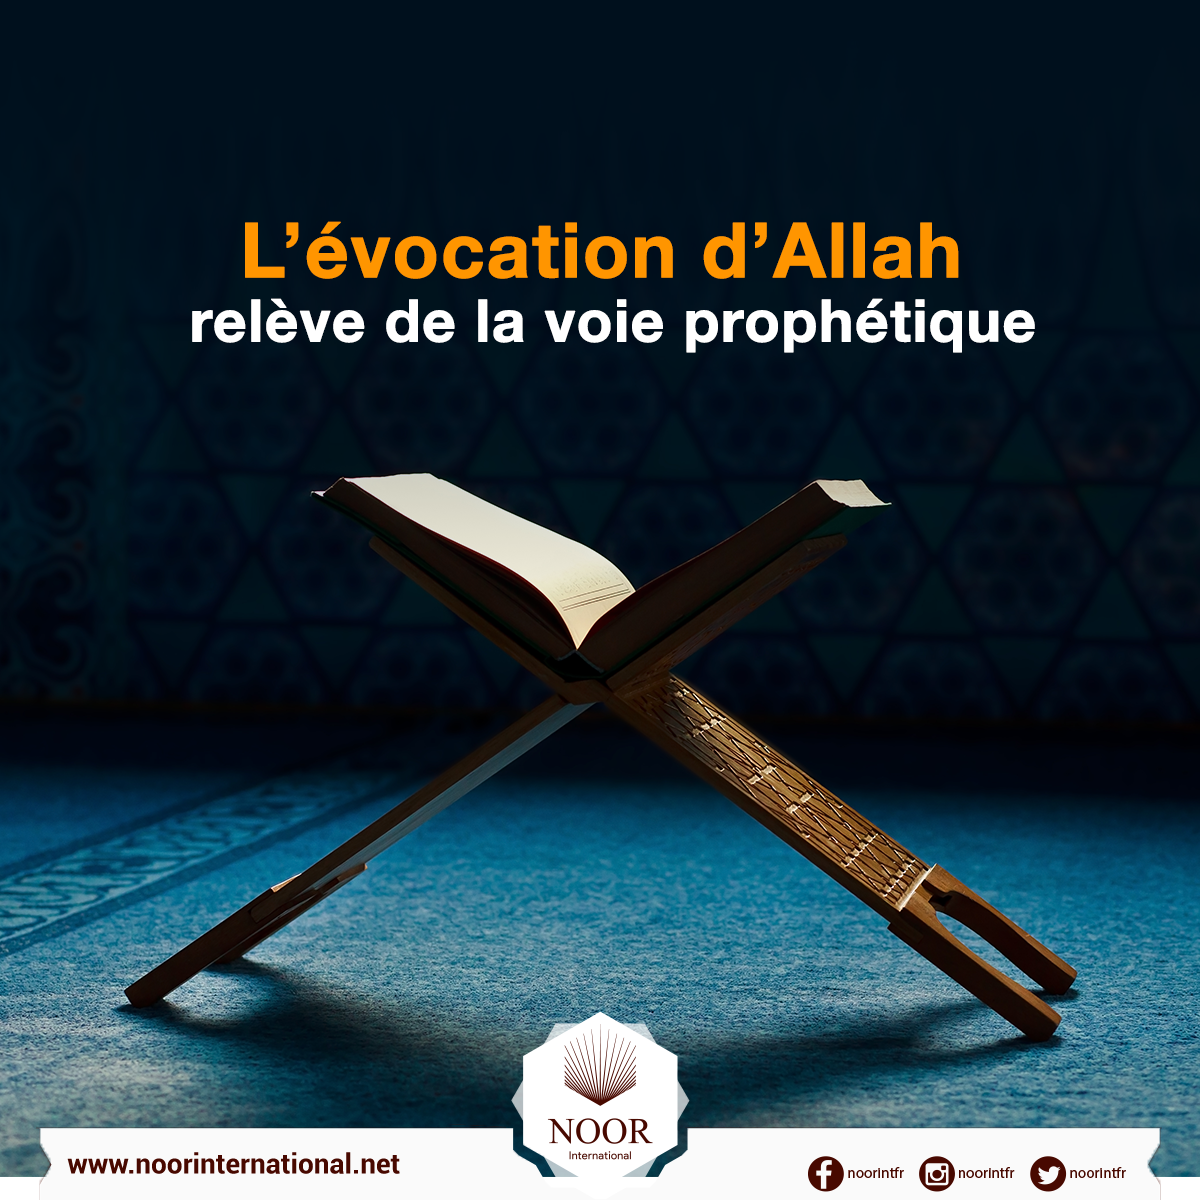 L’évocation d’Allah relève de la voie prophétique